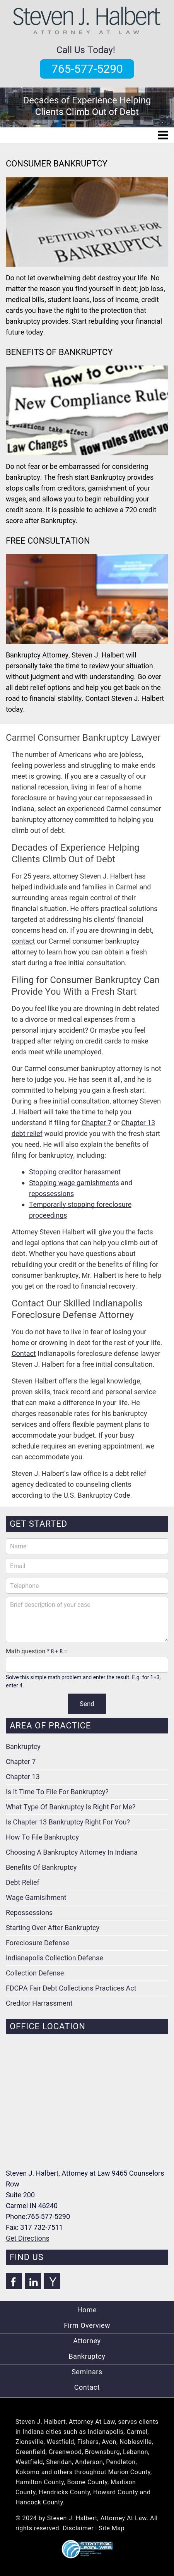 Steven J. Halbert, Attorney At Law - Carmel IN Lawyers